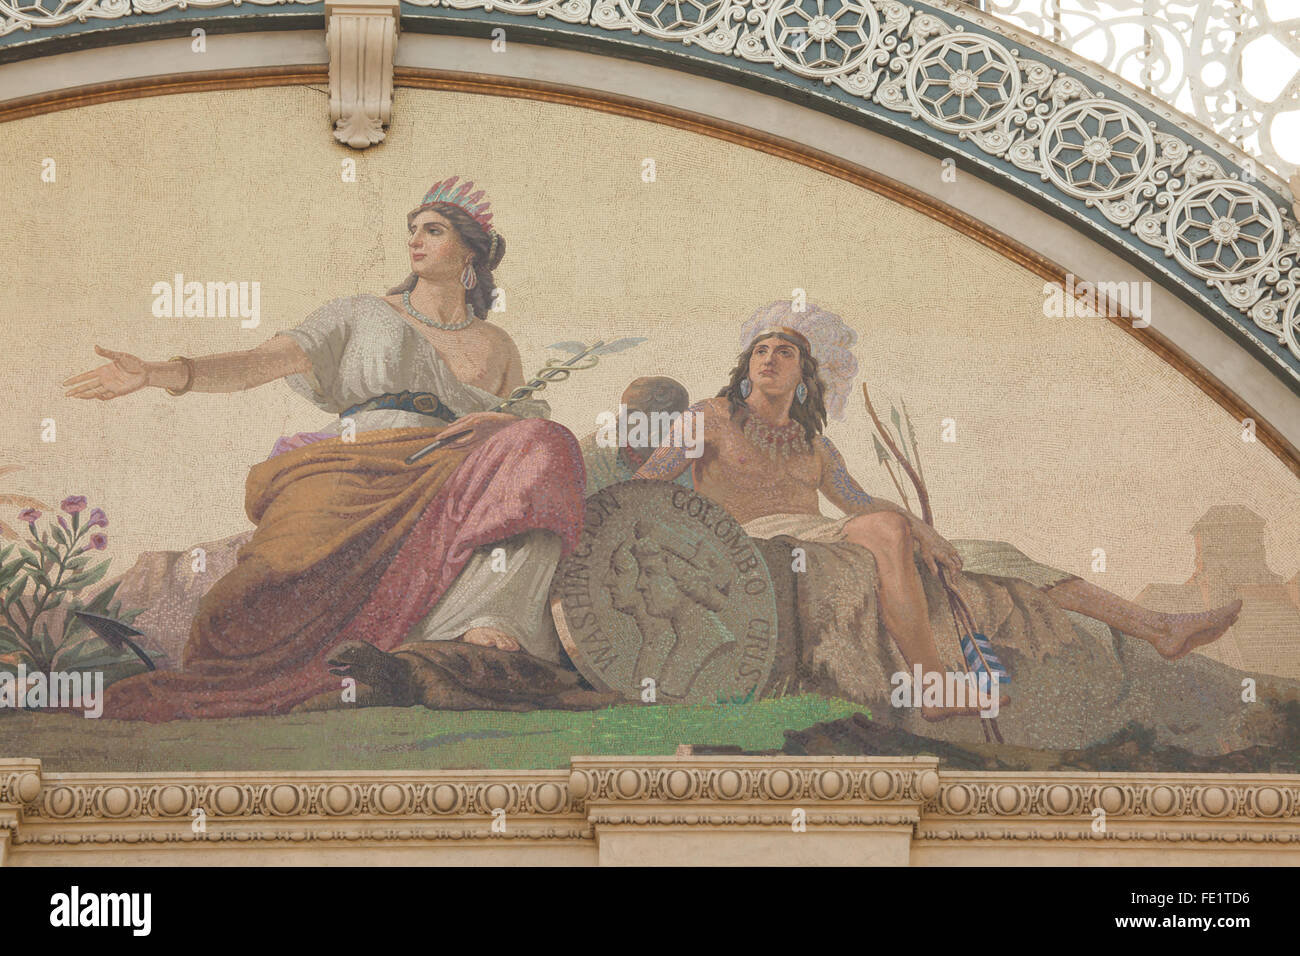 Amerika. Allegorische Mosaik gestaltet von Raffaele Casnedi in der Galleria Vittorio Emanuele II in Mailand, Lombardei, Italien. Stockfoto